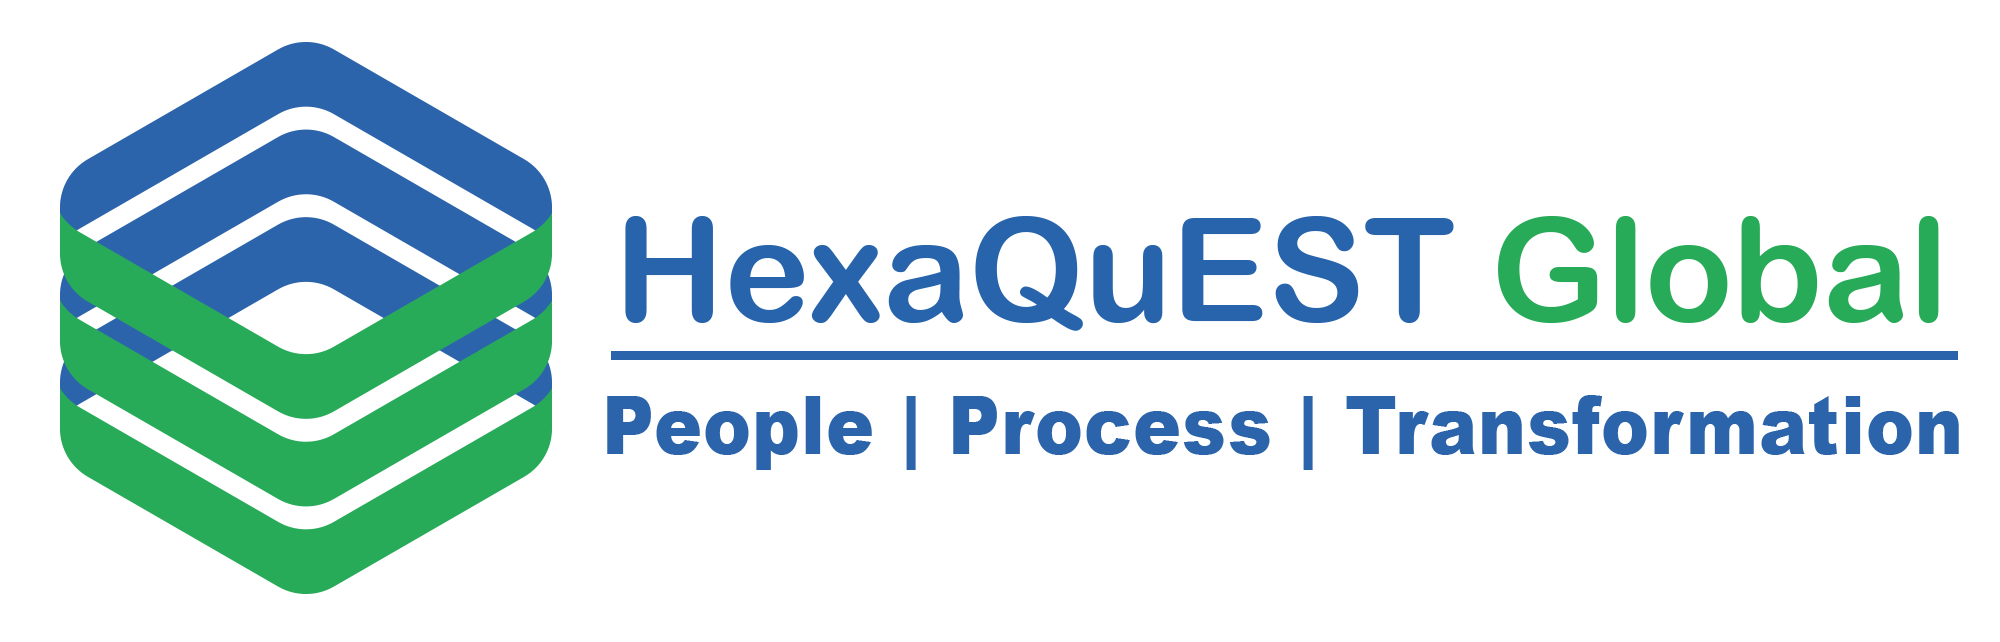 HexaQuest Global